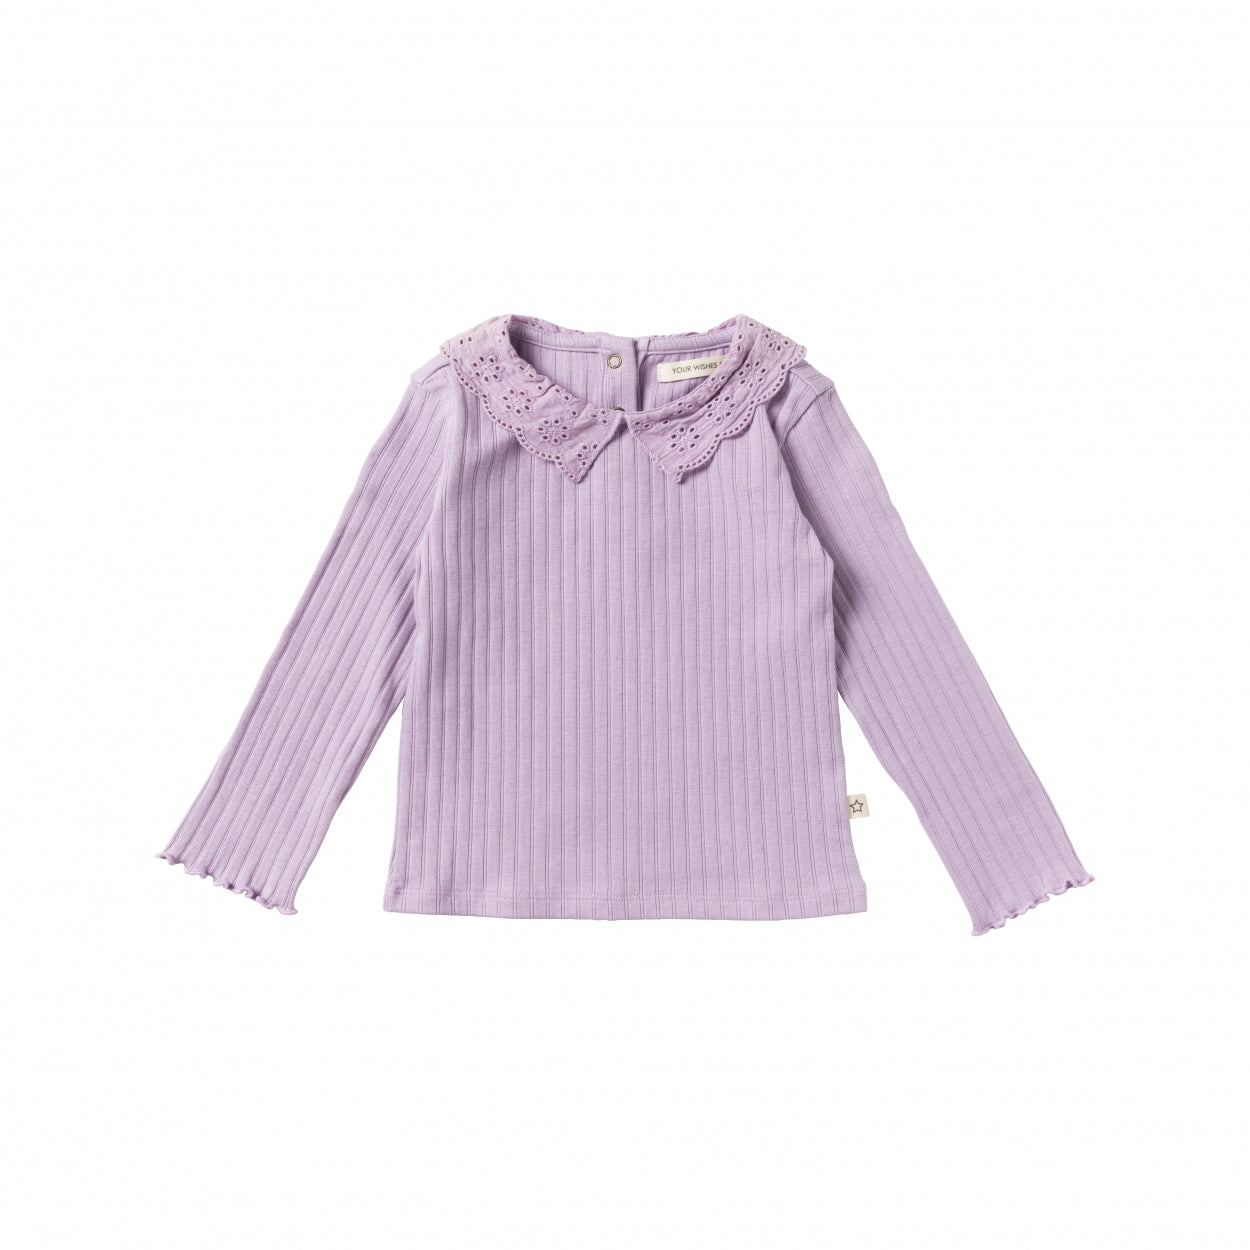 Meisjes Shirt Twin Rib | Mayuri van Your Wishes in de kleur Lavender in maat 98.